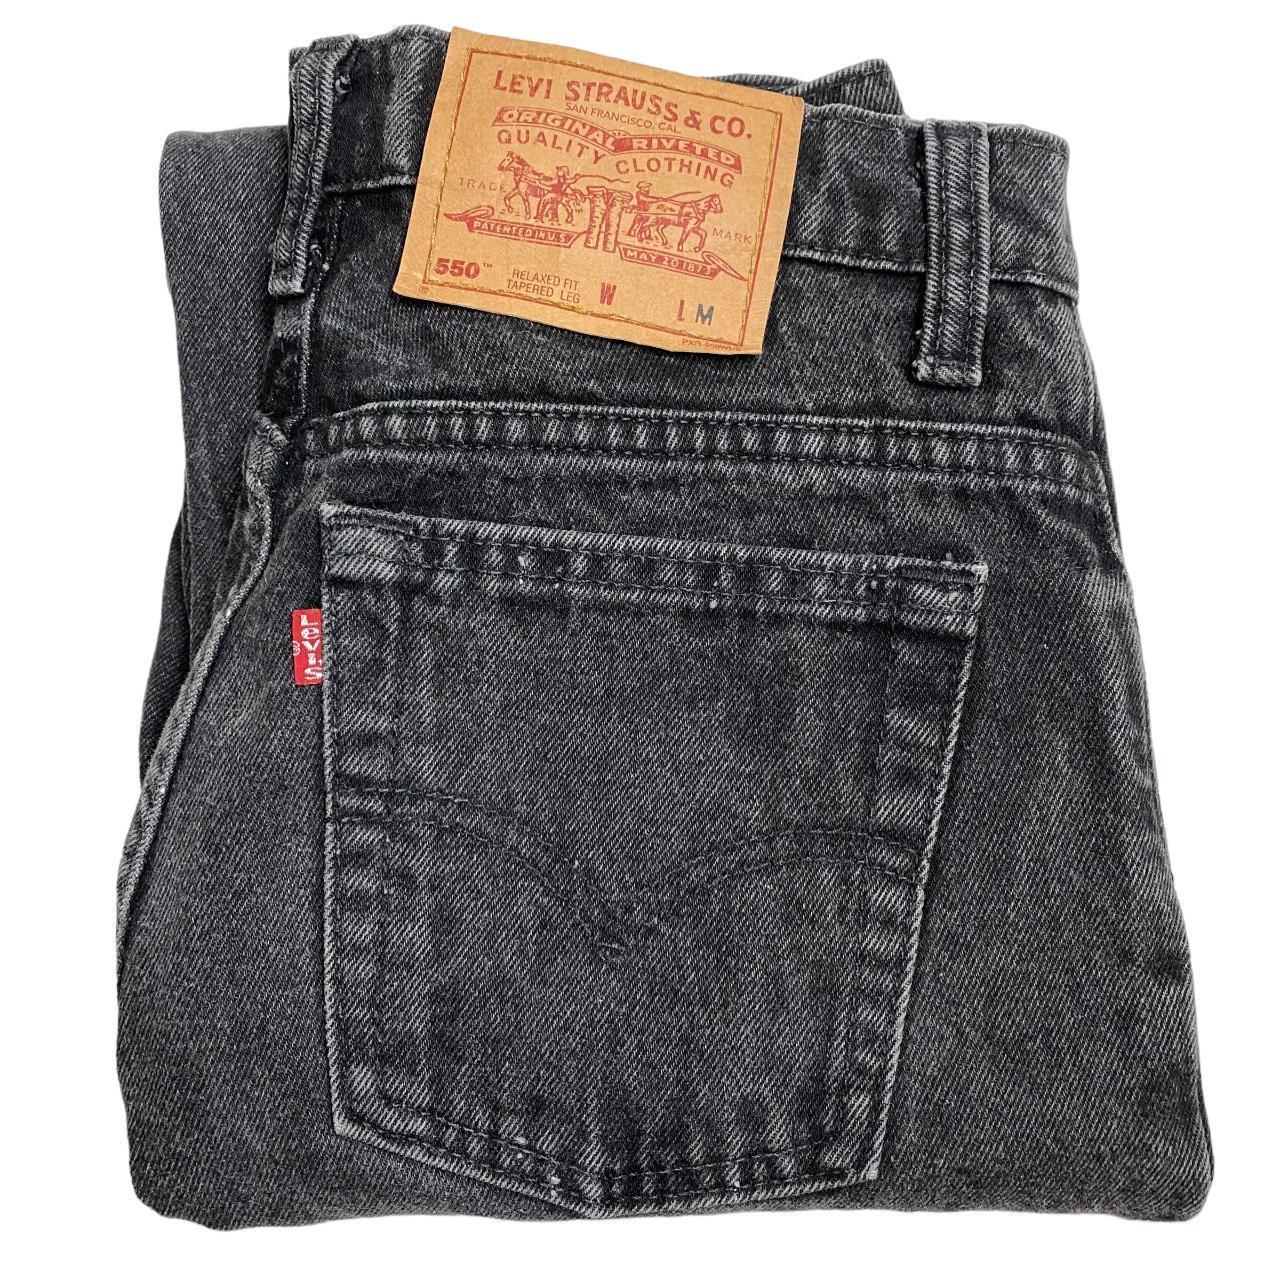 Vintage Levis 550 Jeans Dark Grey High Waisted Made... - Depop